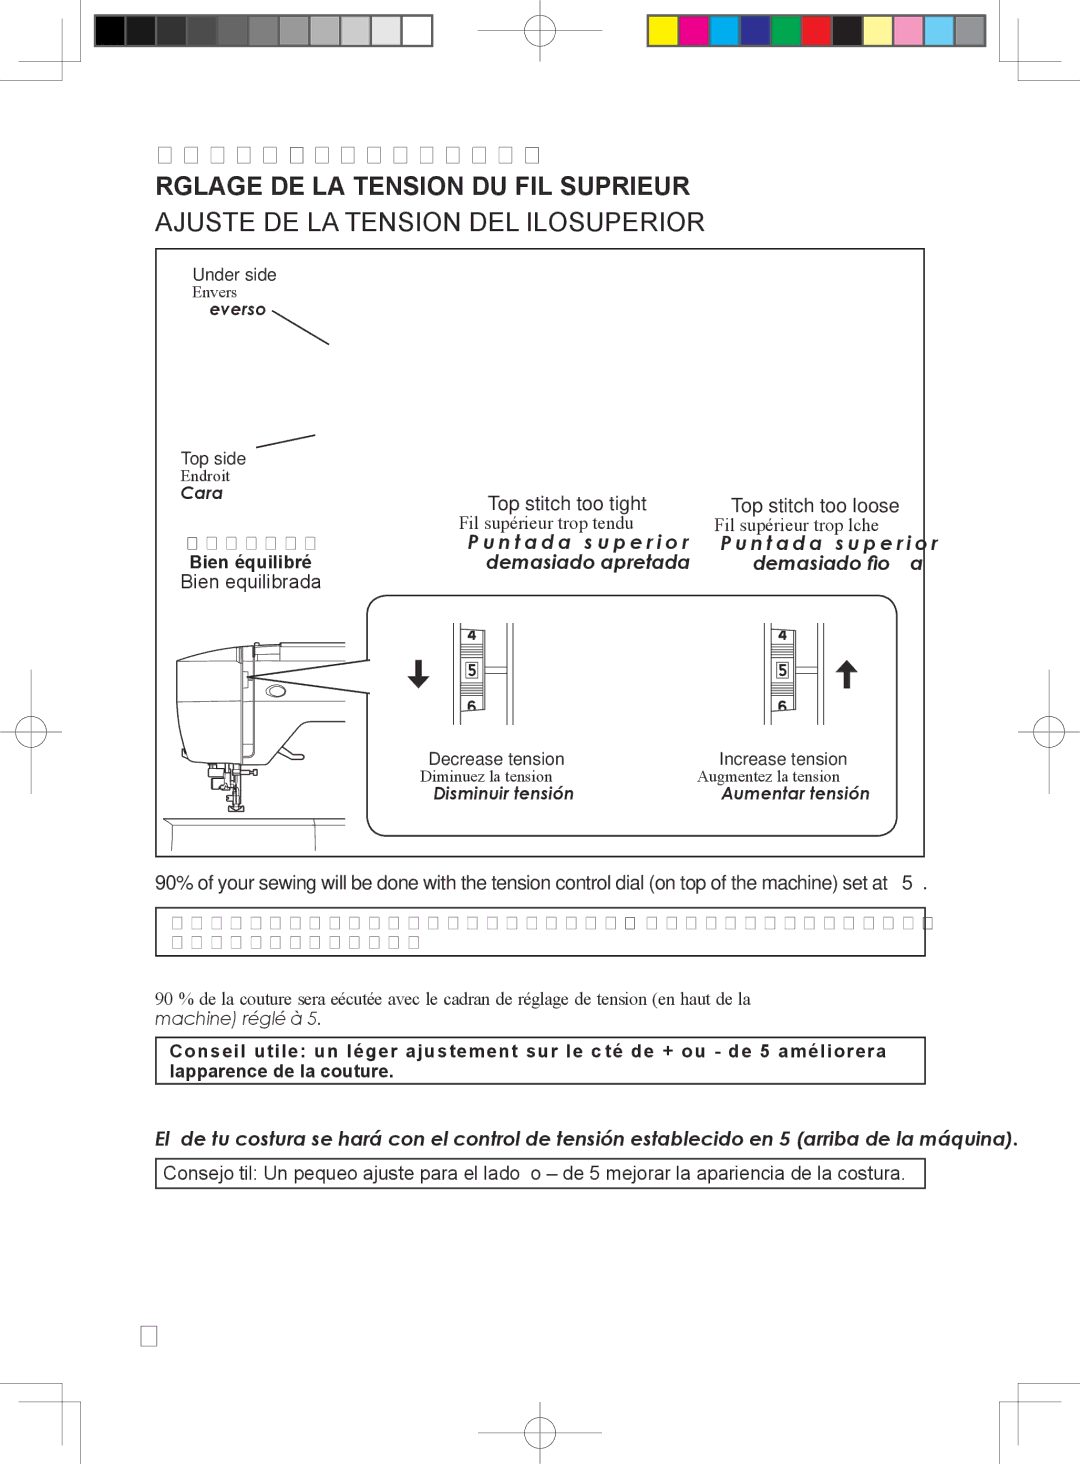 Singer 5400 instruction manual Adjusting TOP Thread Tension, Ajuste DE LA Tension DEL Ilosuperior 